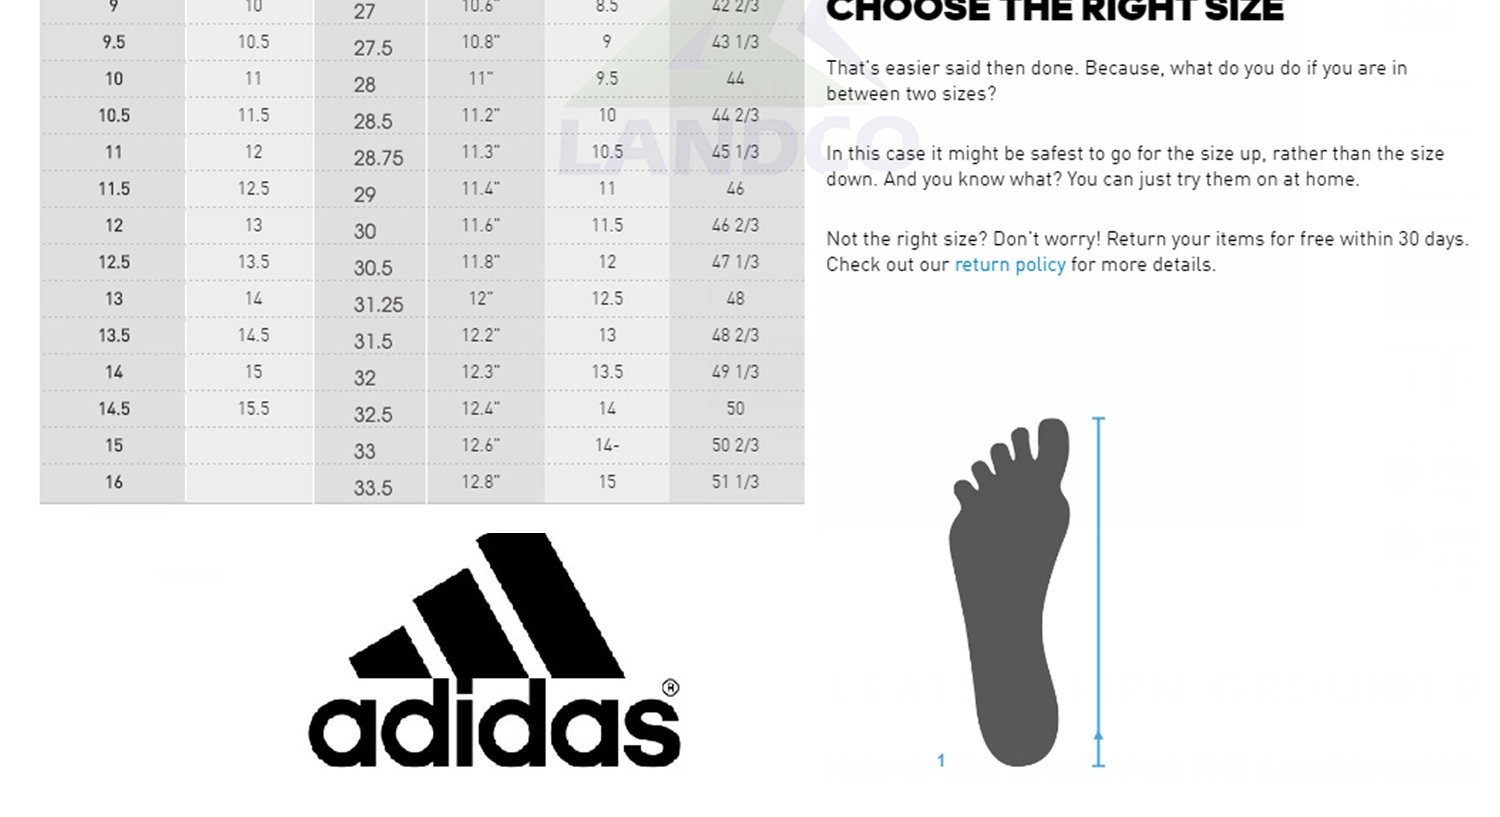 เกี่ยวกับ Adidas รองเท้าวิ่ง รองเท้ากีฬา รองเท้าผู้หญิง อาดิดาส Rg Women Shoe Energy Falcon X EE9941 (2300)